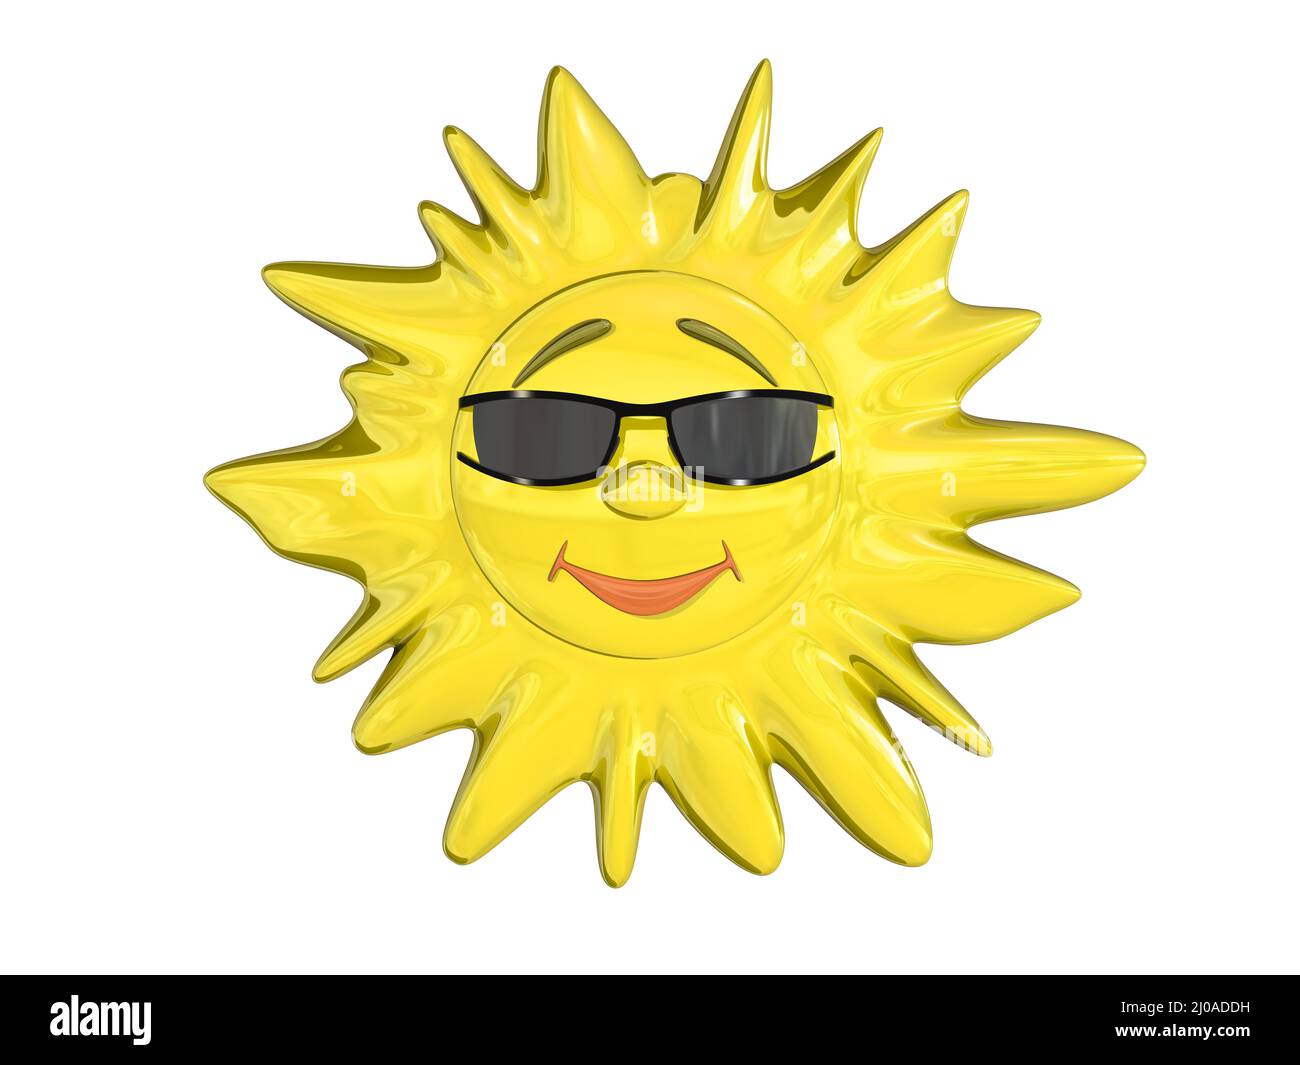 Sun cartoon hi-res stock photography and images - Alamy